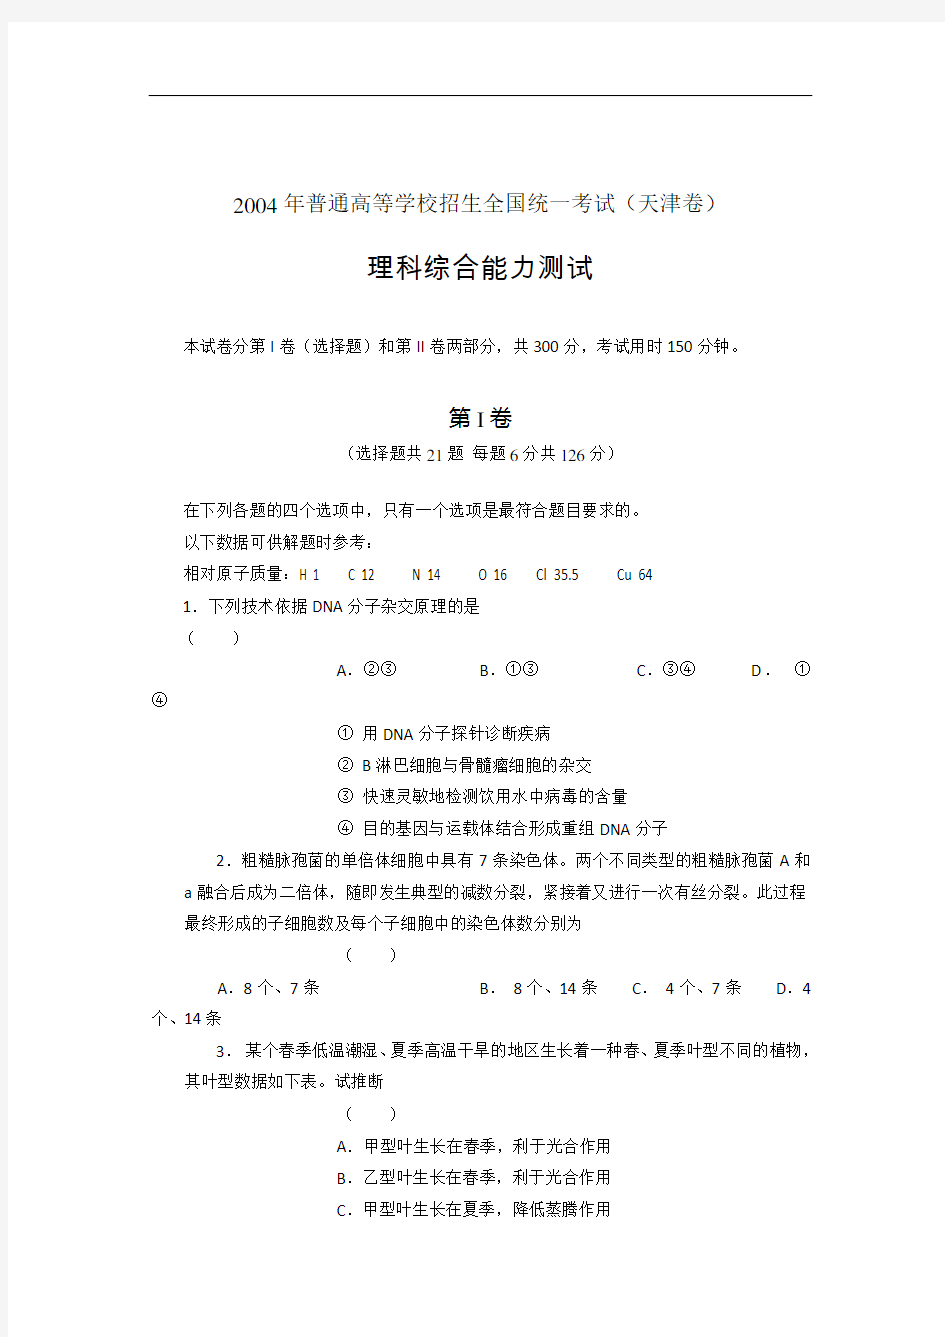 2004年高考试题——理综试卷(天津卷)及答案